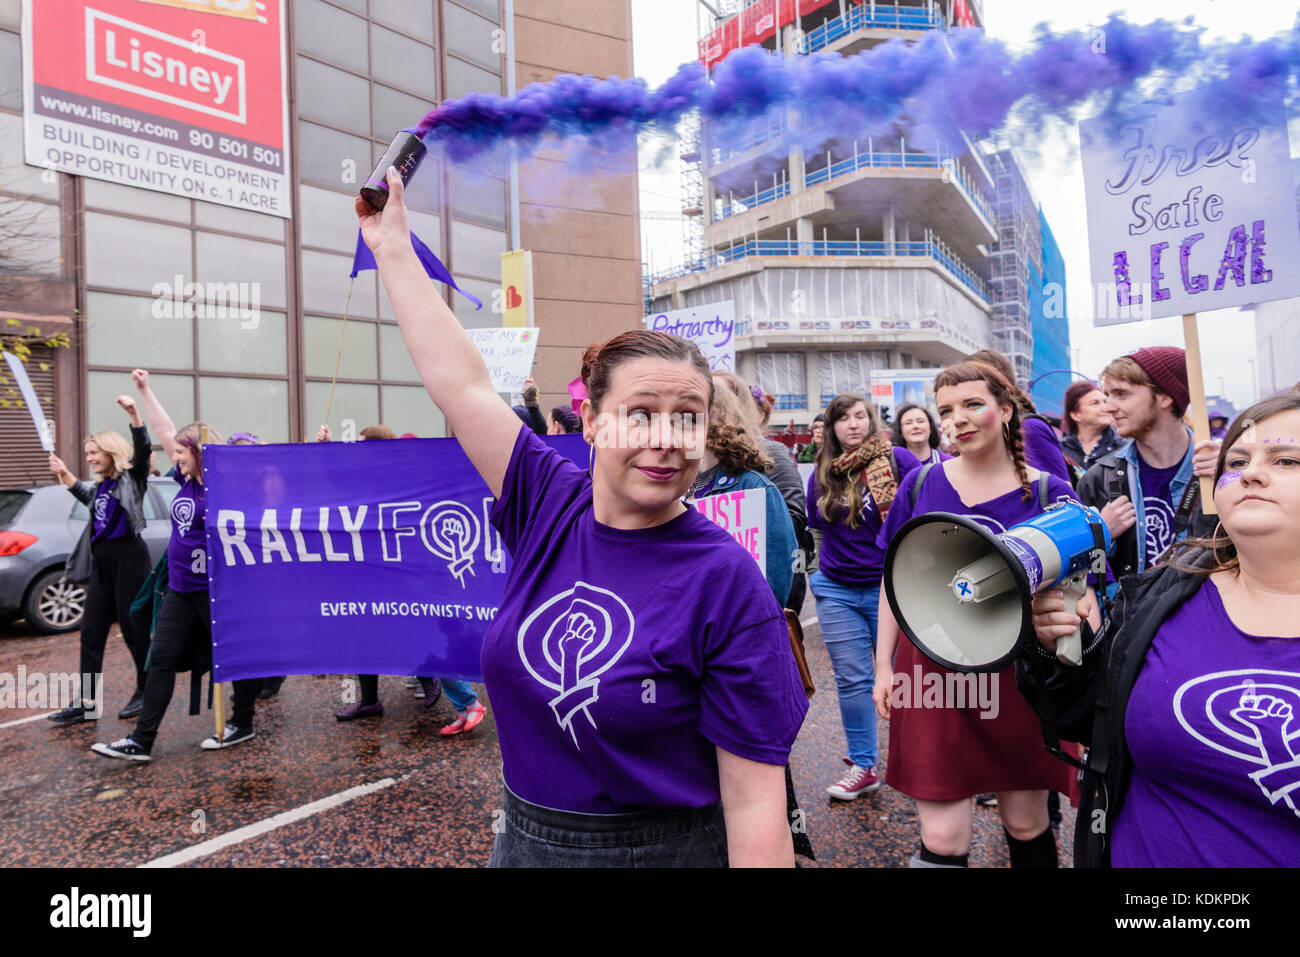 Belfast, Nordirland. 14/10/2017 - Rallye für Wahl halten eine Parade zur Unterstützung der pro-reproduktive Wahl Recht auf Abtreibung und die Rechte der Frauen. Rund 1200 Menschen nahmen an der Veranstaltung teil. Stockfoto